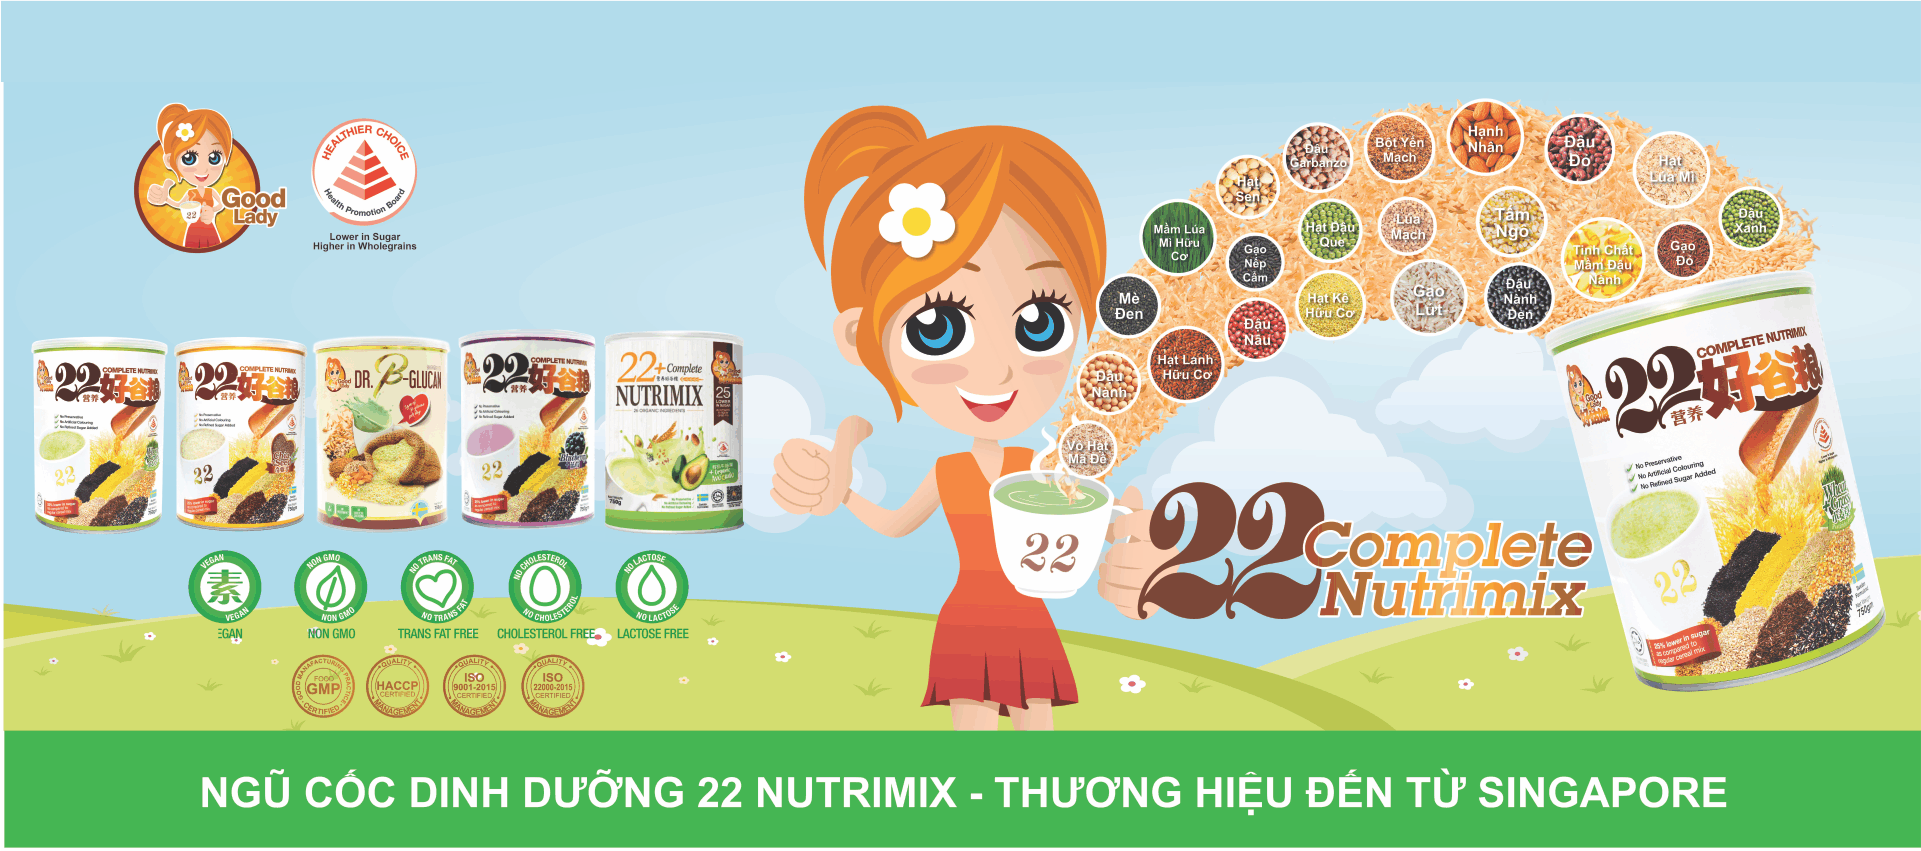 IV. Về ngũ cốc Dinh Dưỡng 22 nutrimix